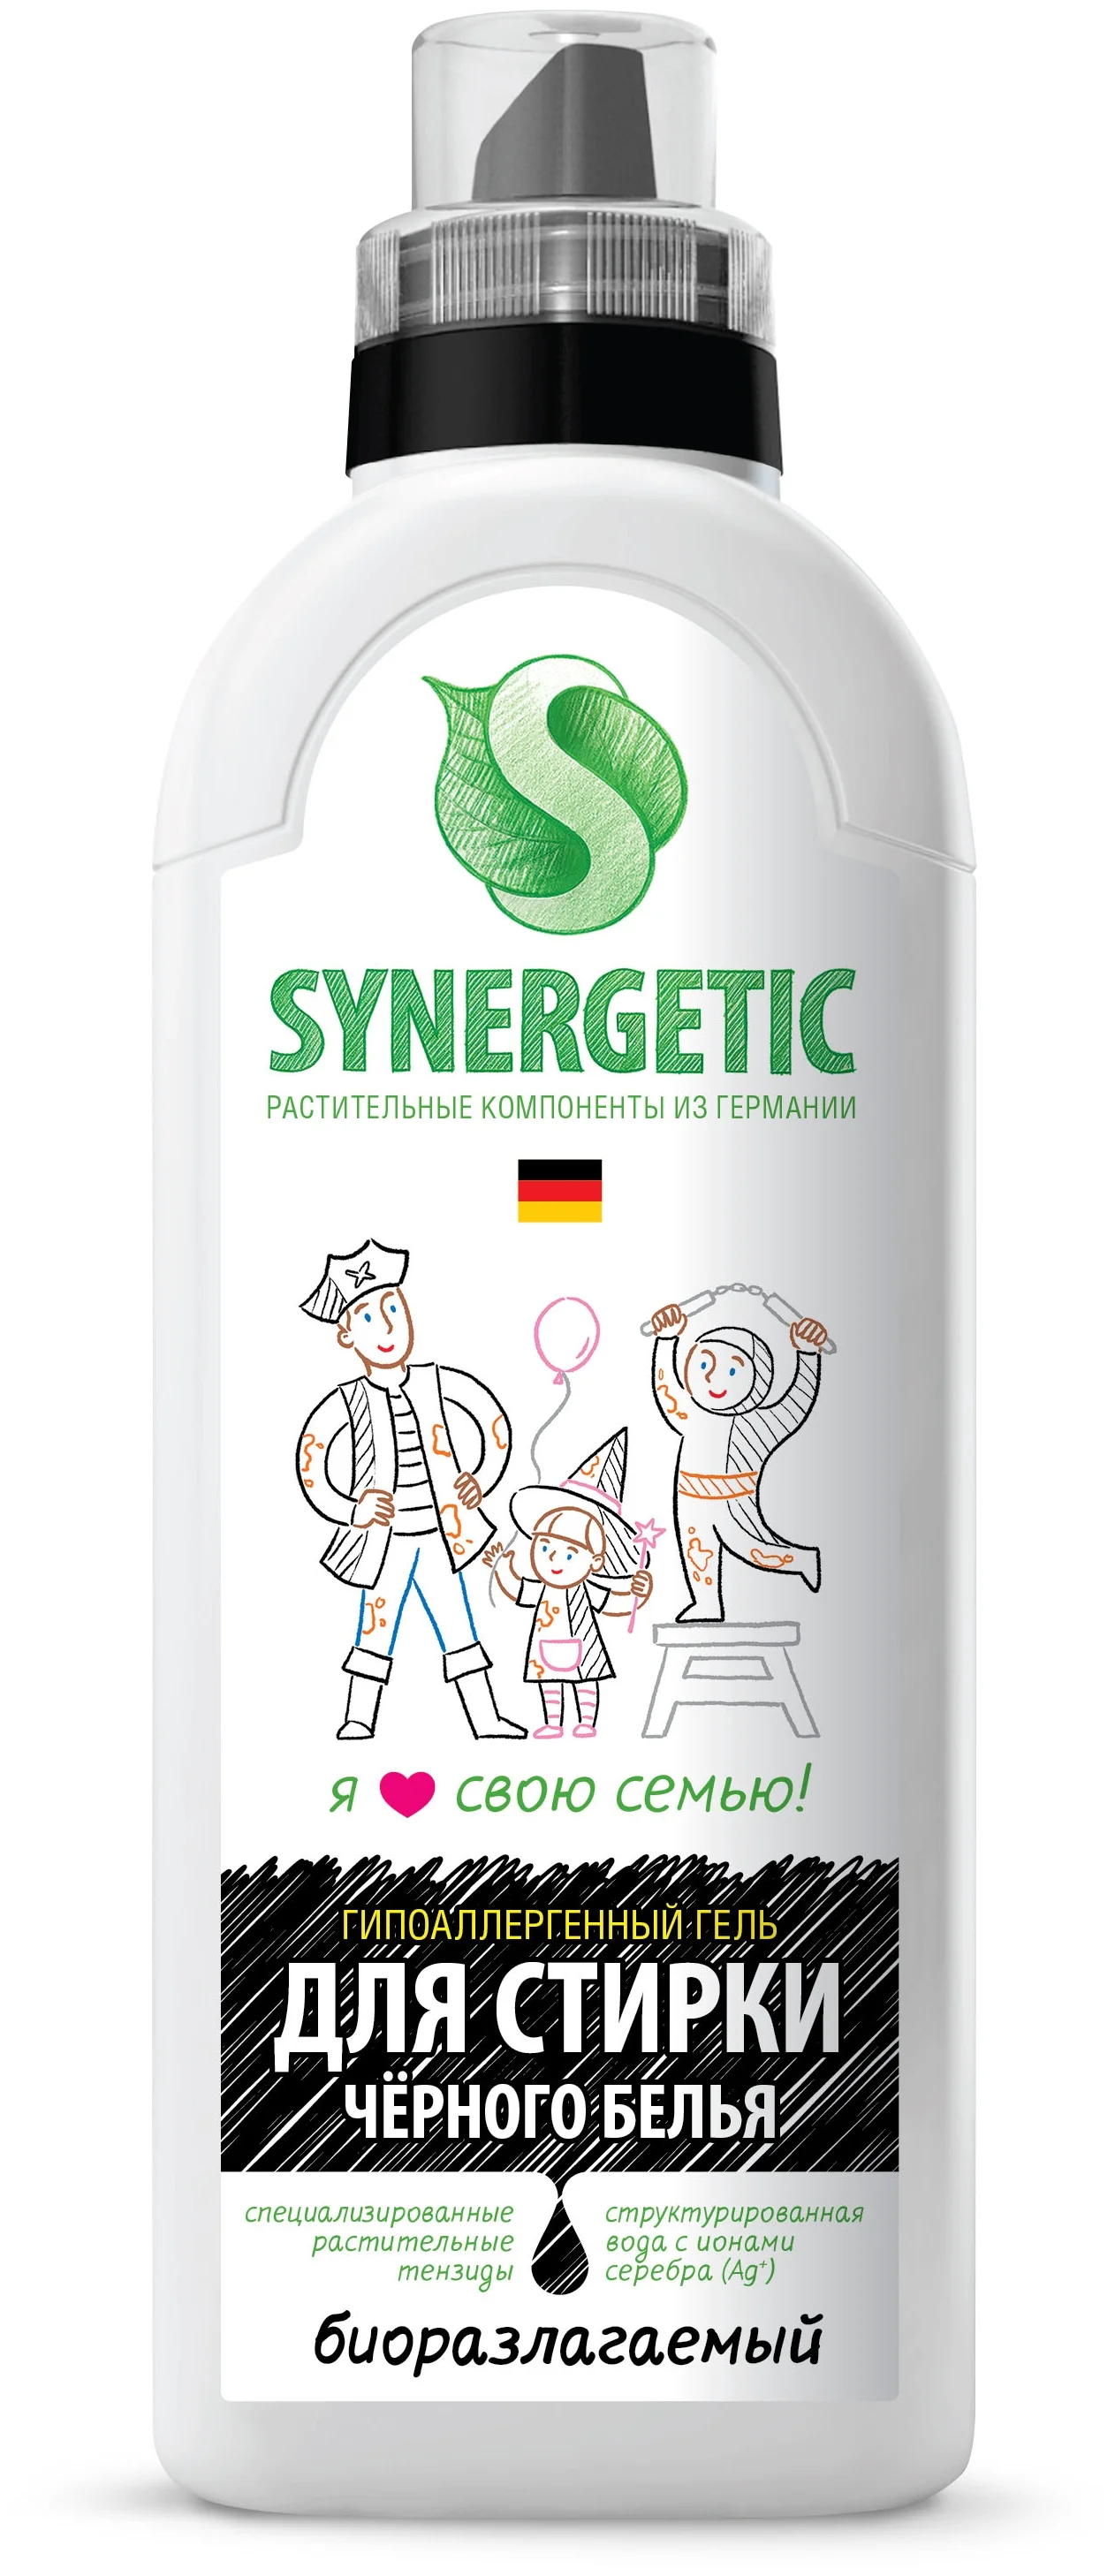 Synergetic - назначение: для хлопковых тканей, для синтетических тканей, для черных и темных тканей